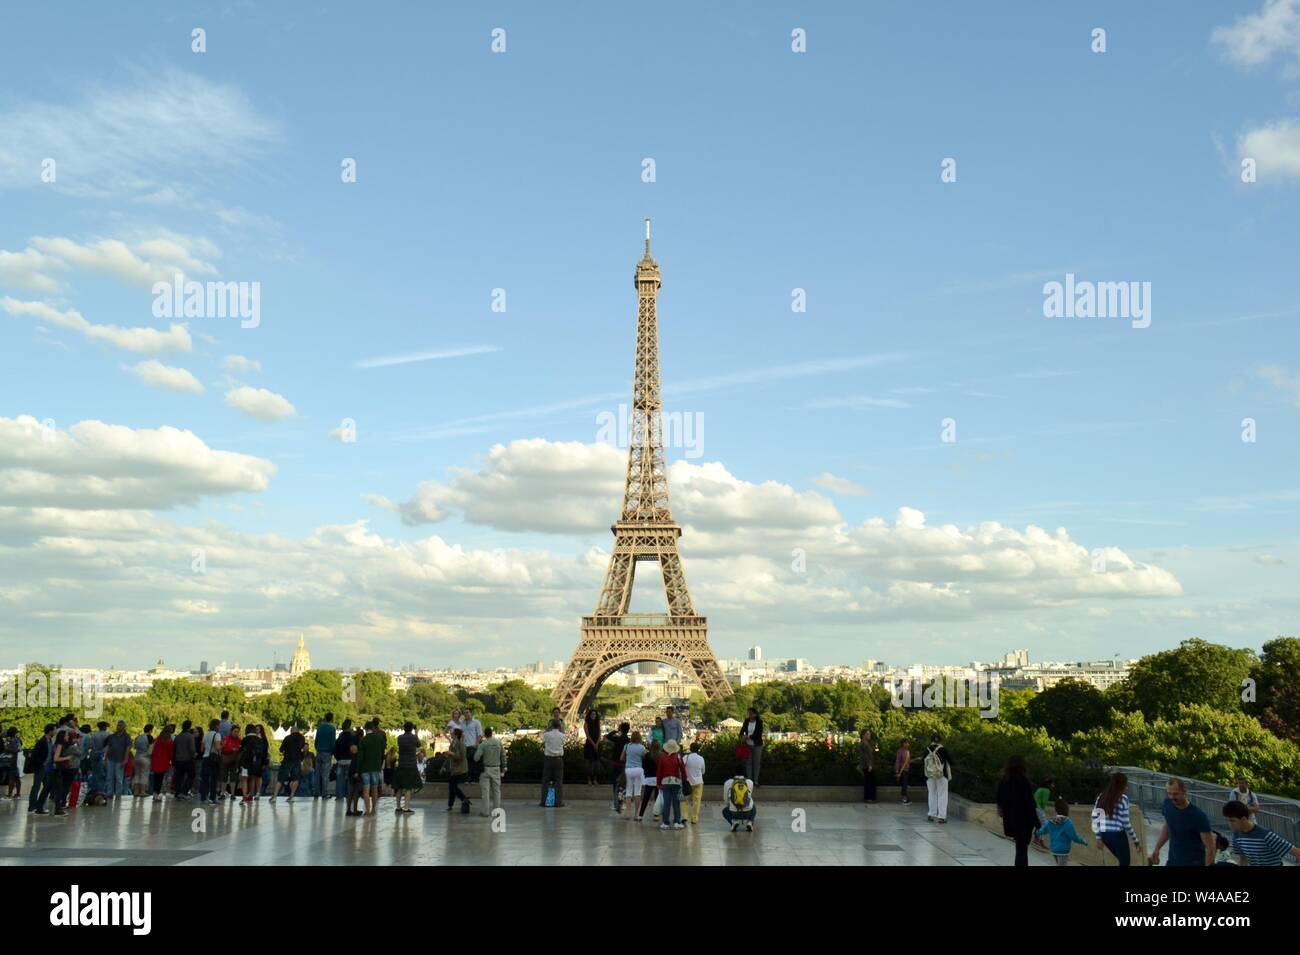 París, Francia - 18 de agosto de 2014: Hermosa vista panorámica de la Torre Eiffel desde Trocadero jardines mirador con turistas admirando la ciudad. Foto de stock